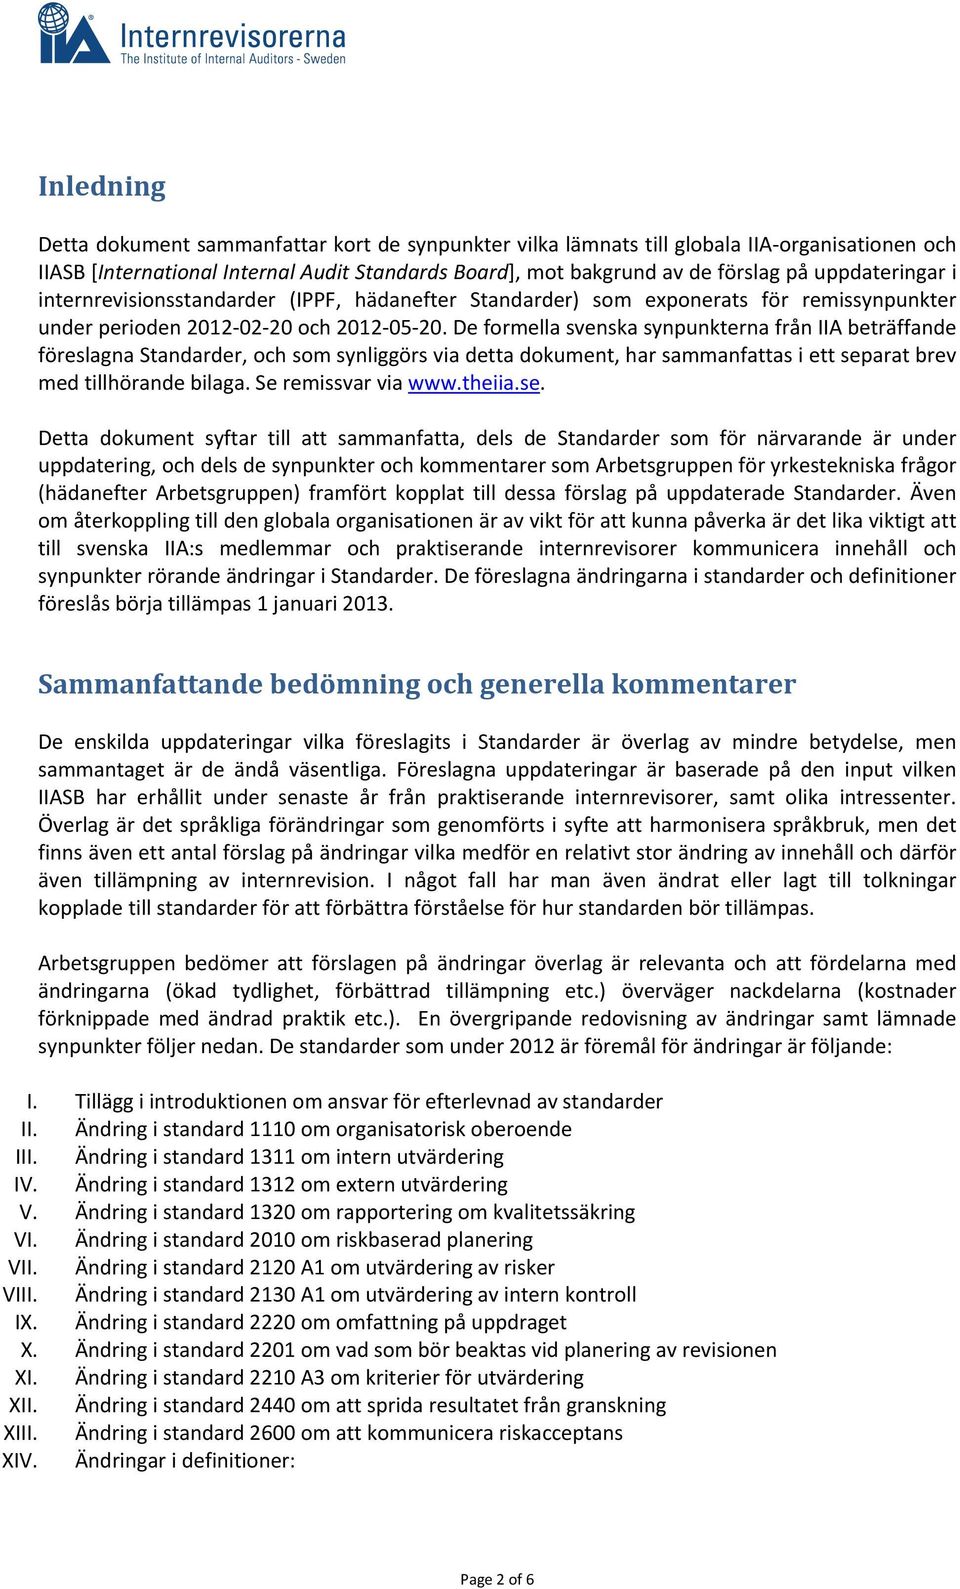 De formella svenska synpunkterna från IIA beträffande föreslagna Standarder, och som synliggörs via detta dokument, har sammanfattas i ett separat brev med tillhörande bilaga. Se remissvar via www.